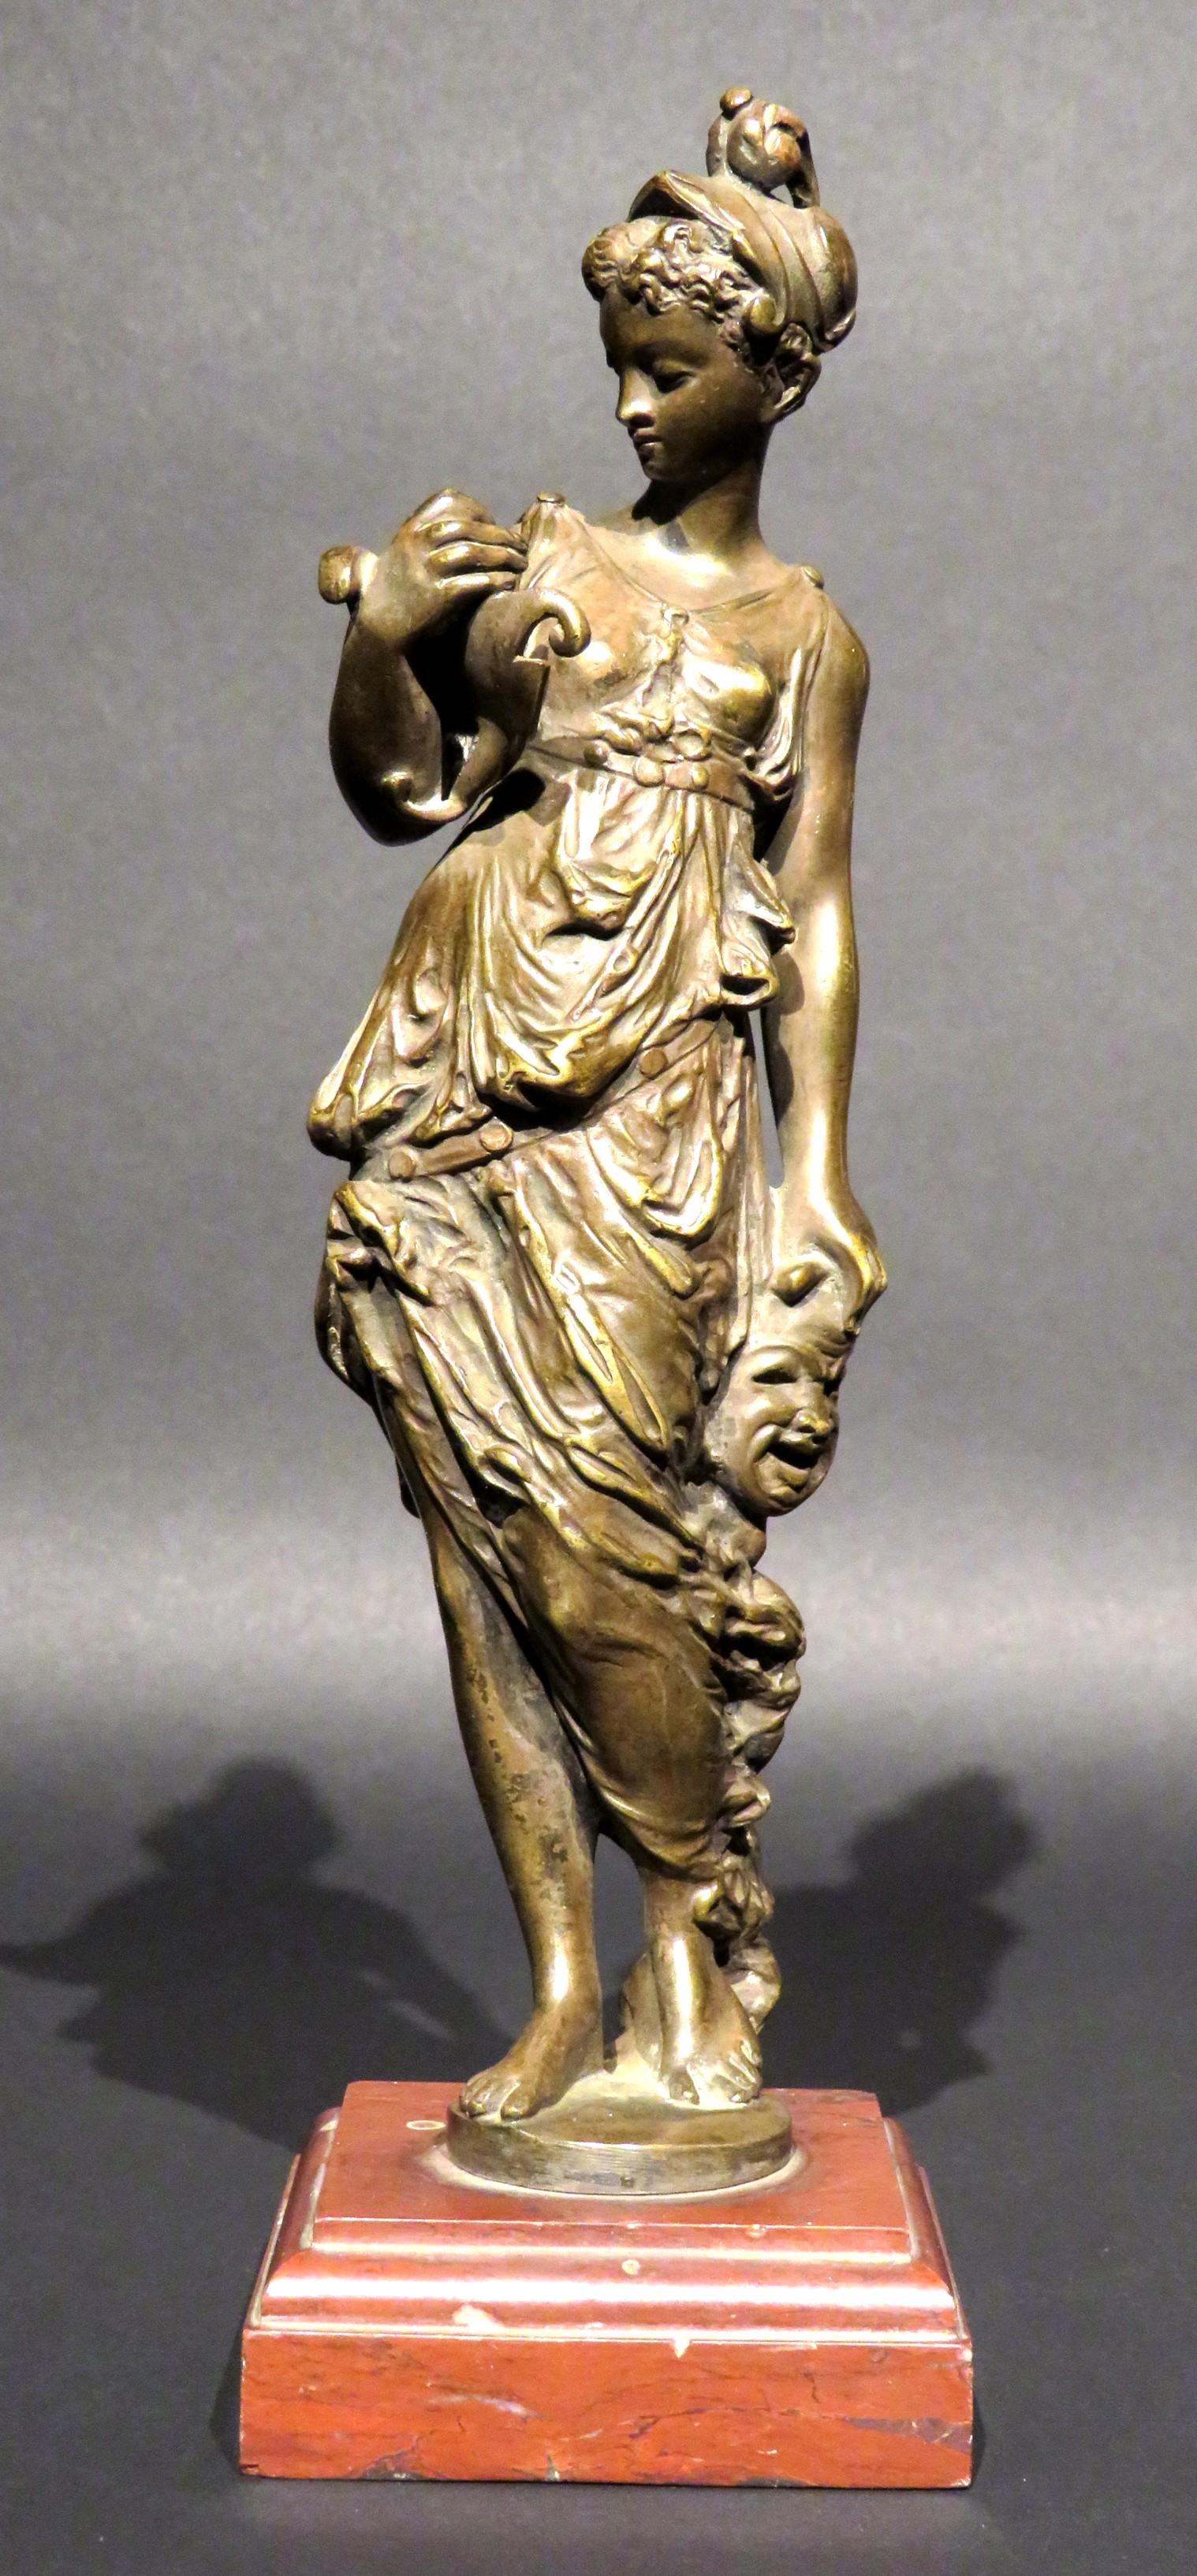 Die fein gegossene und patinierte Bronzefigur der Thalia, eine der neun griechischen Musen und bekannt als Göttin der Komödie und der idyllischen Poesie, steht in klassischer Kleidung und hält in der einen Hand eine komödiantische Maske und in der